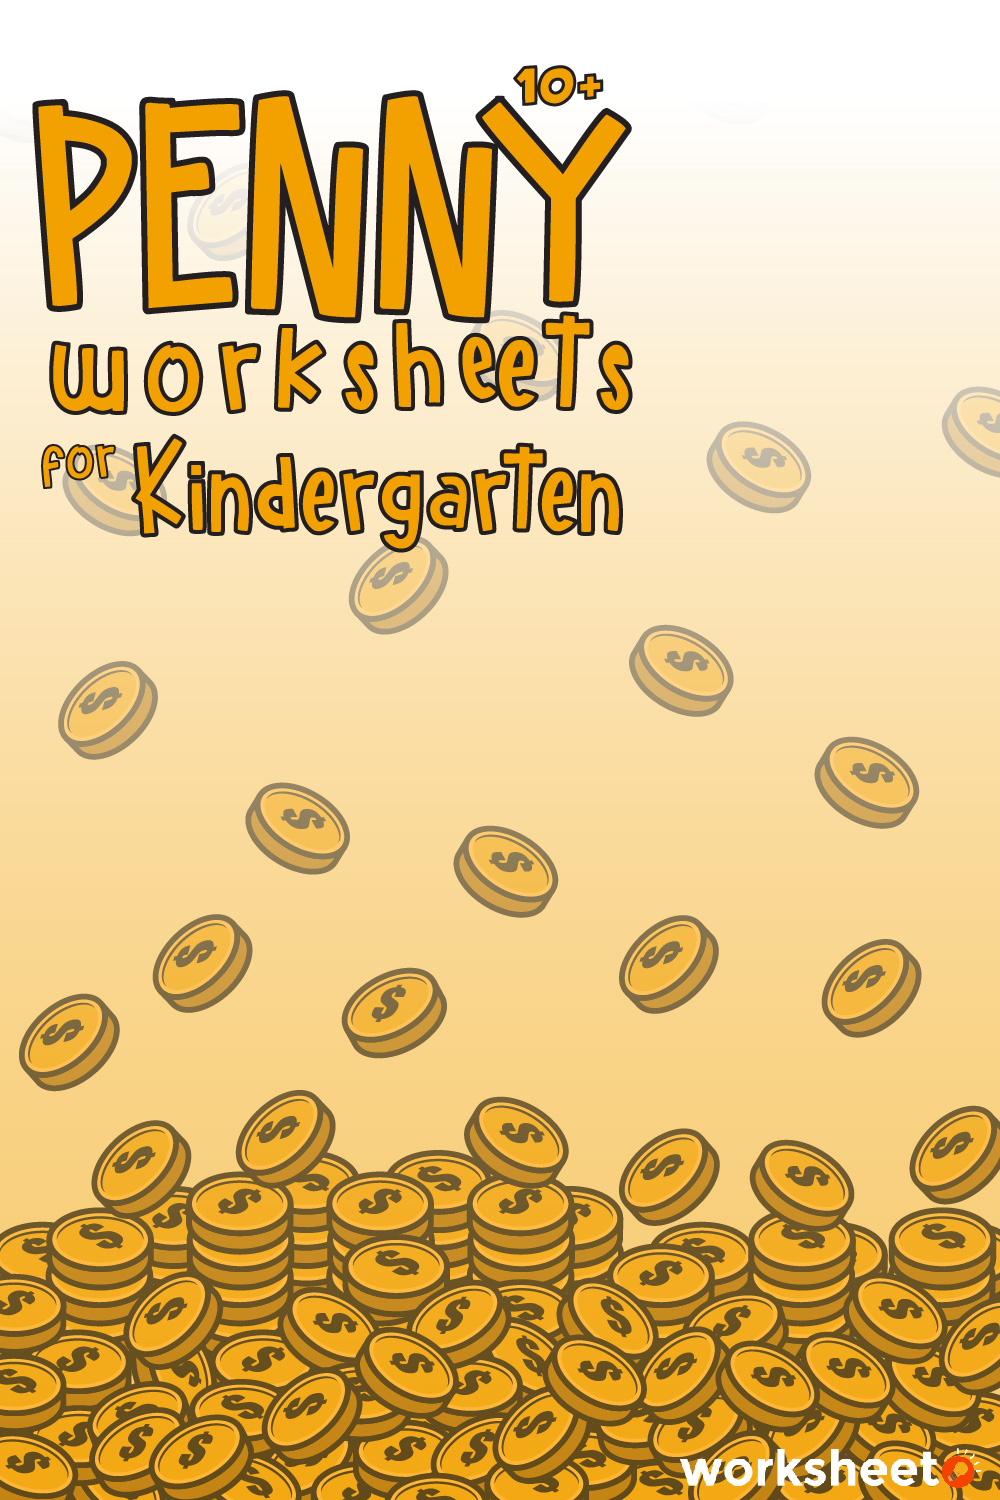 Penny Worksheets for Kindergarten